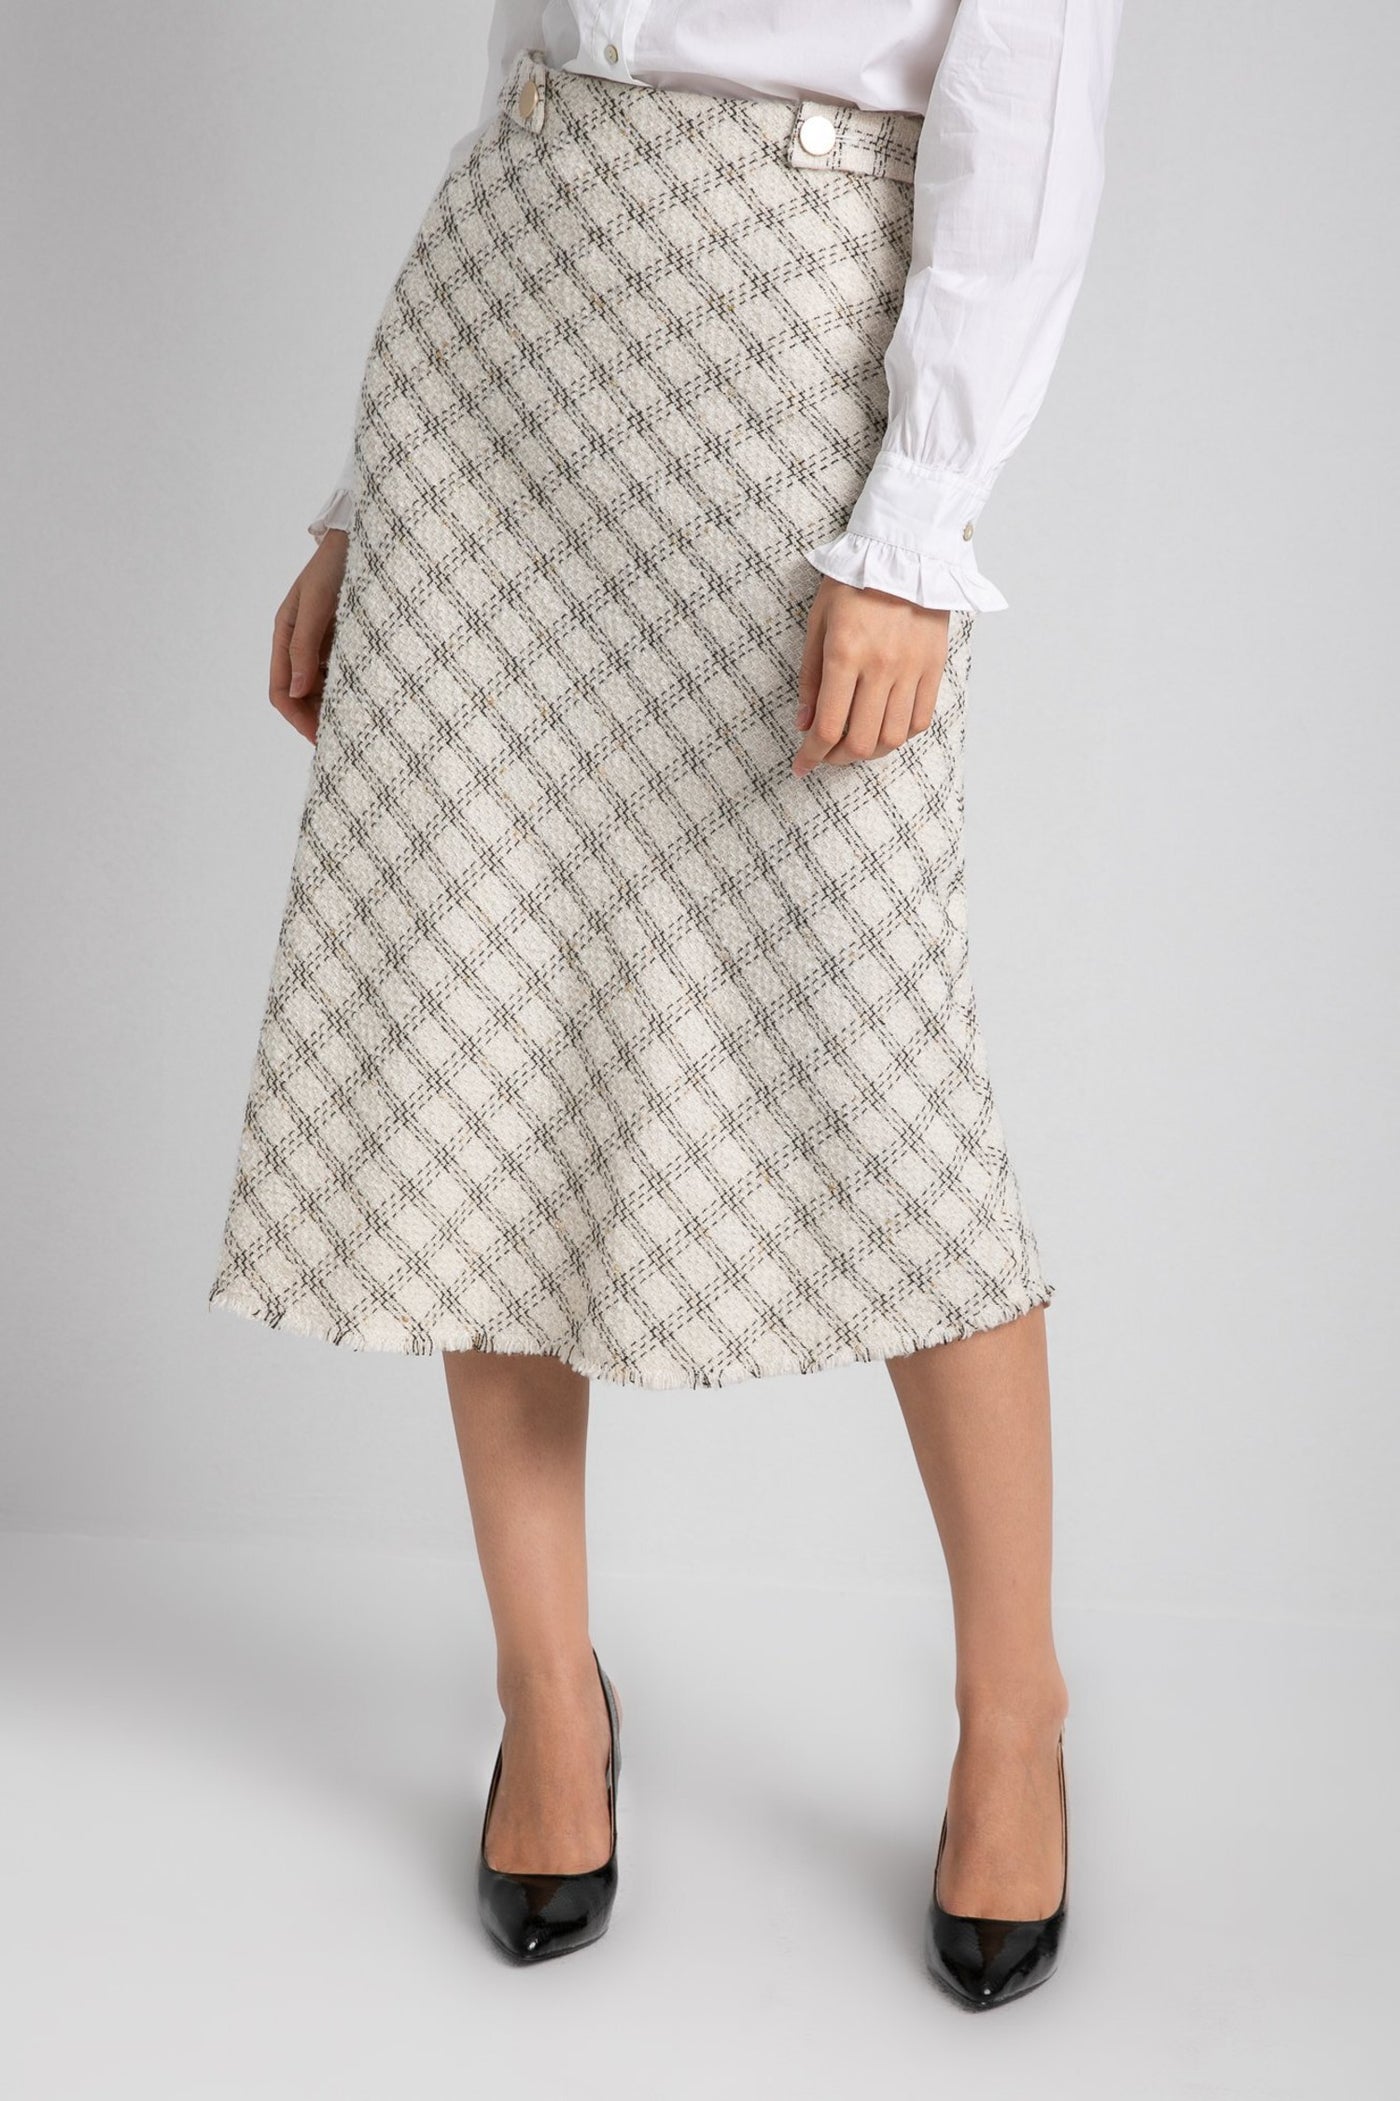 Tweed Skirt - Knee Length